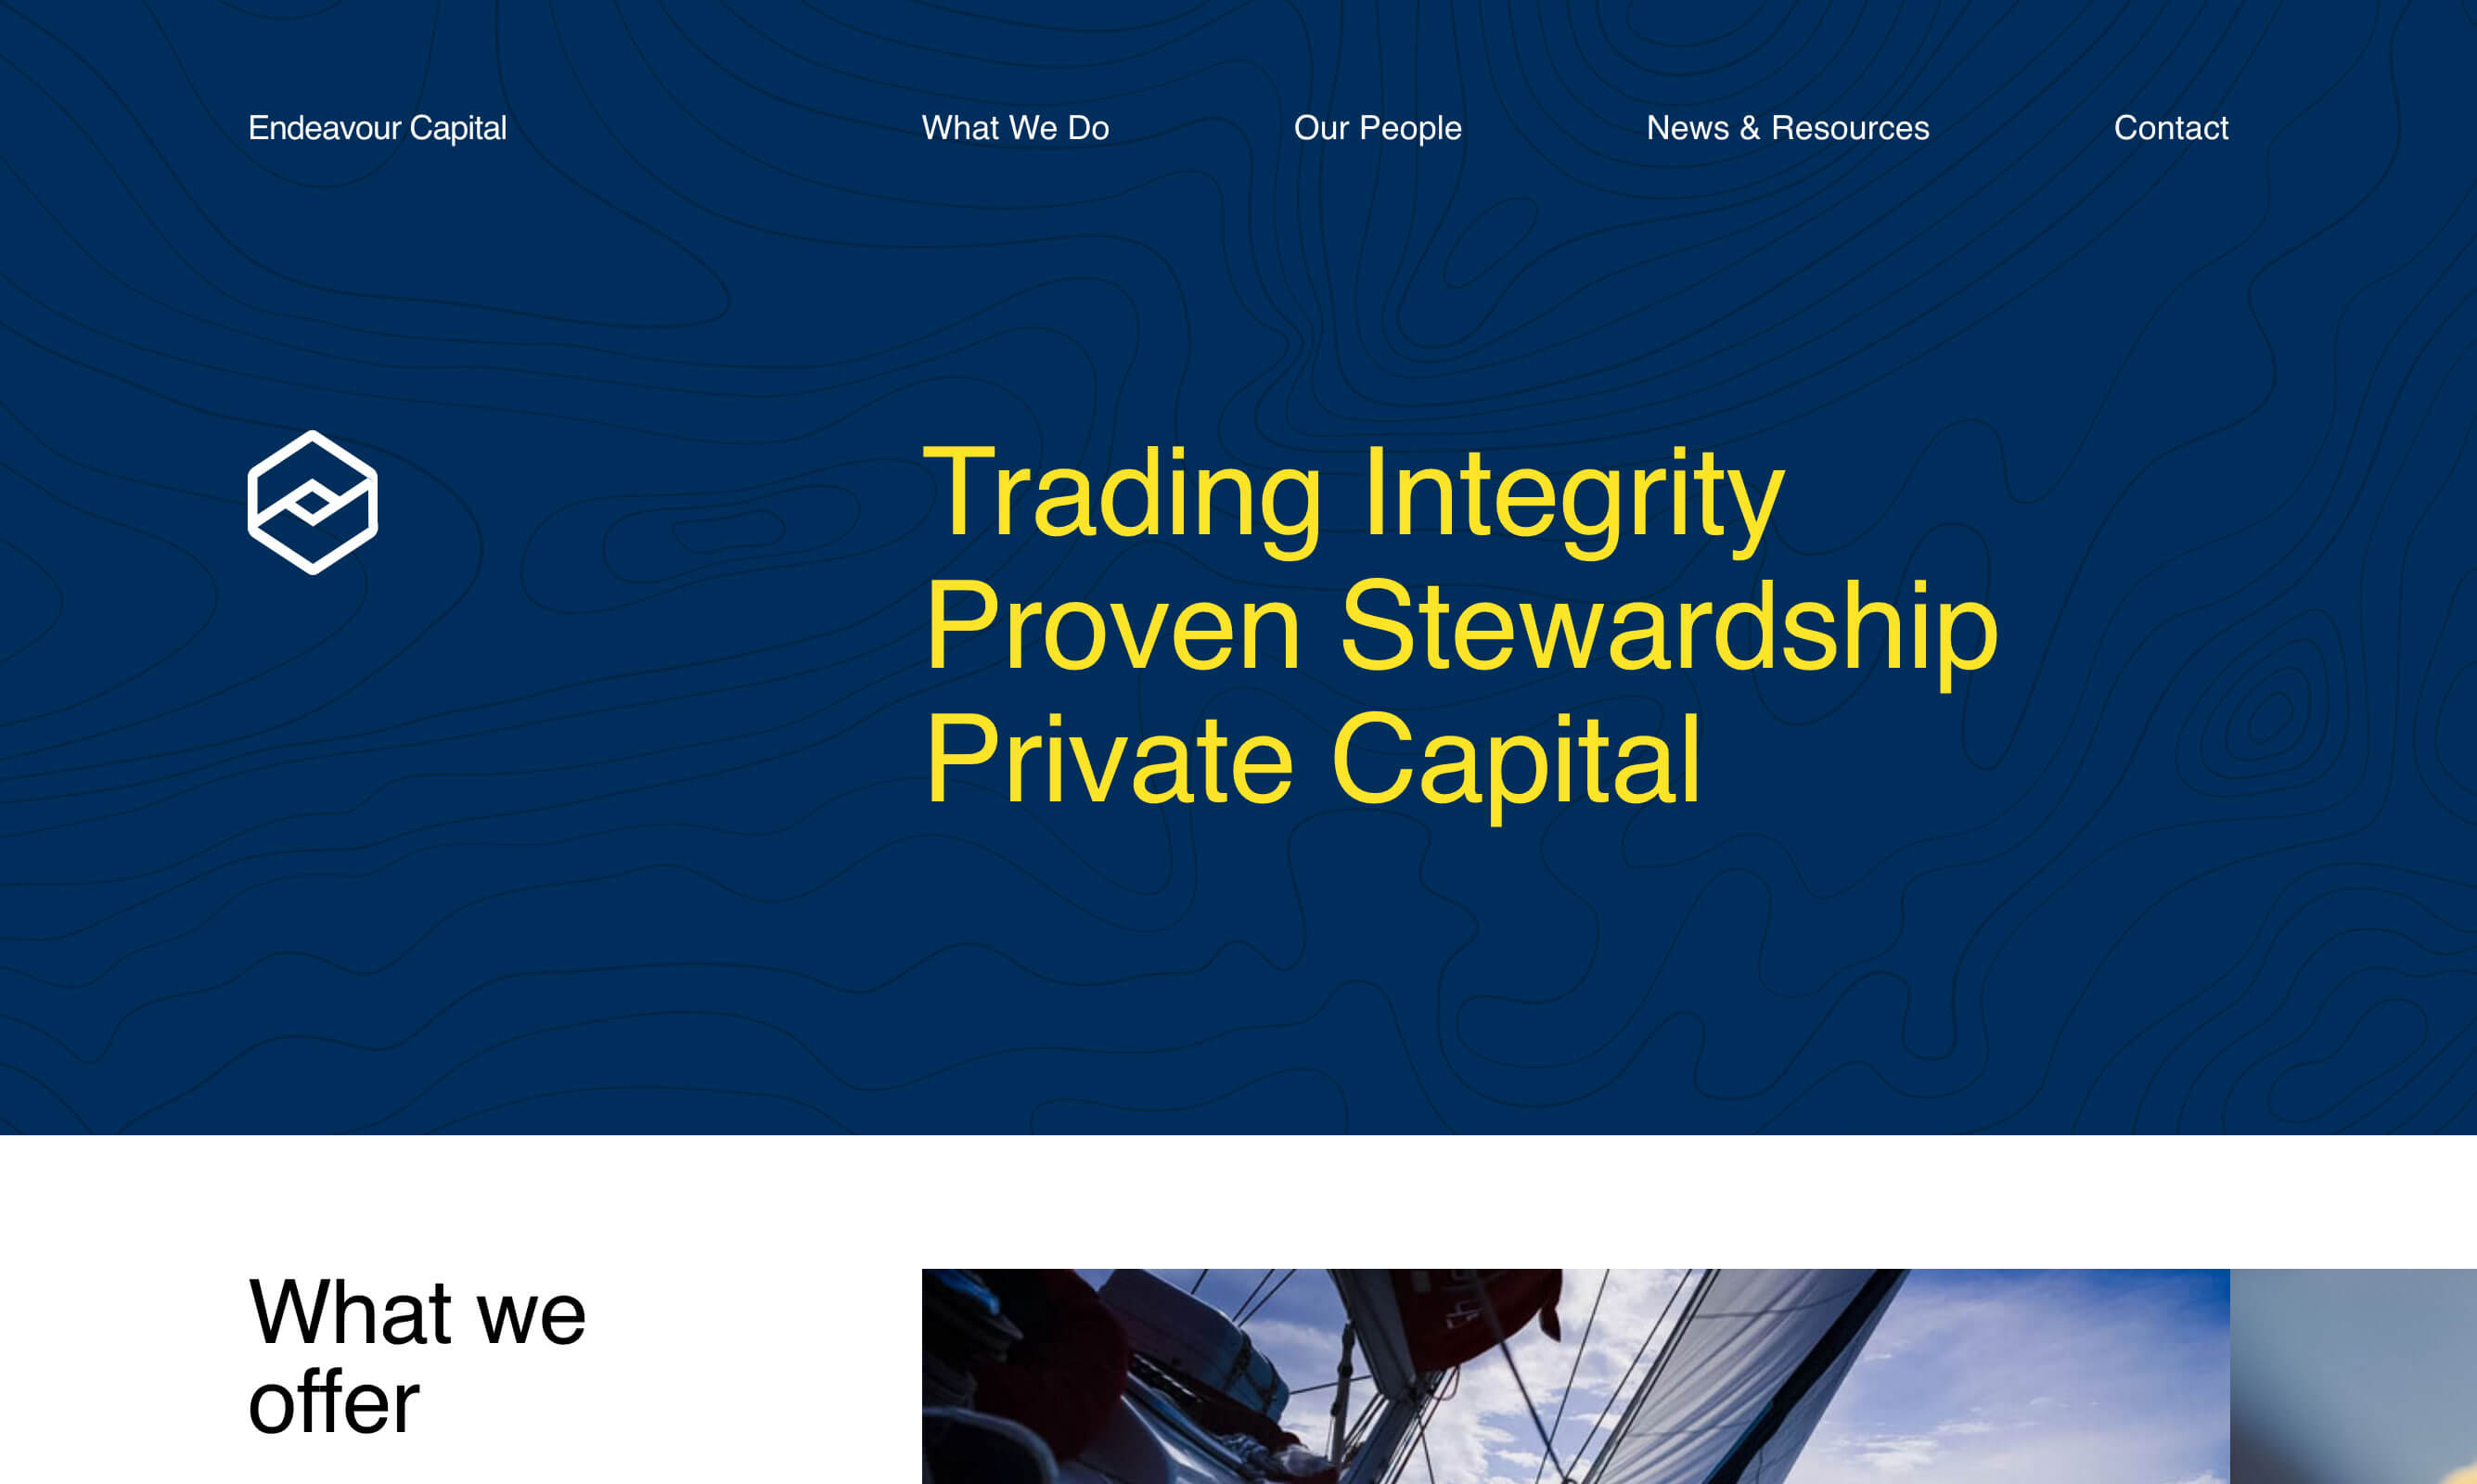 Image de la page d'accueil du site Endeavour Capital actuellement